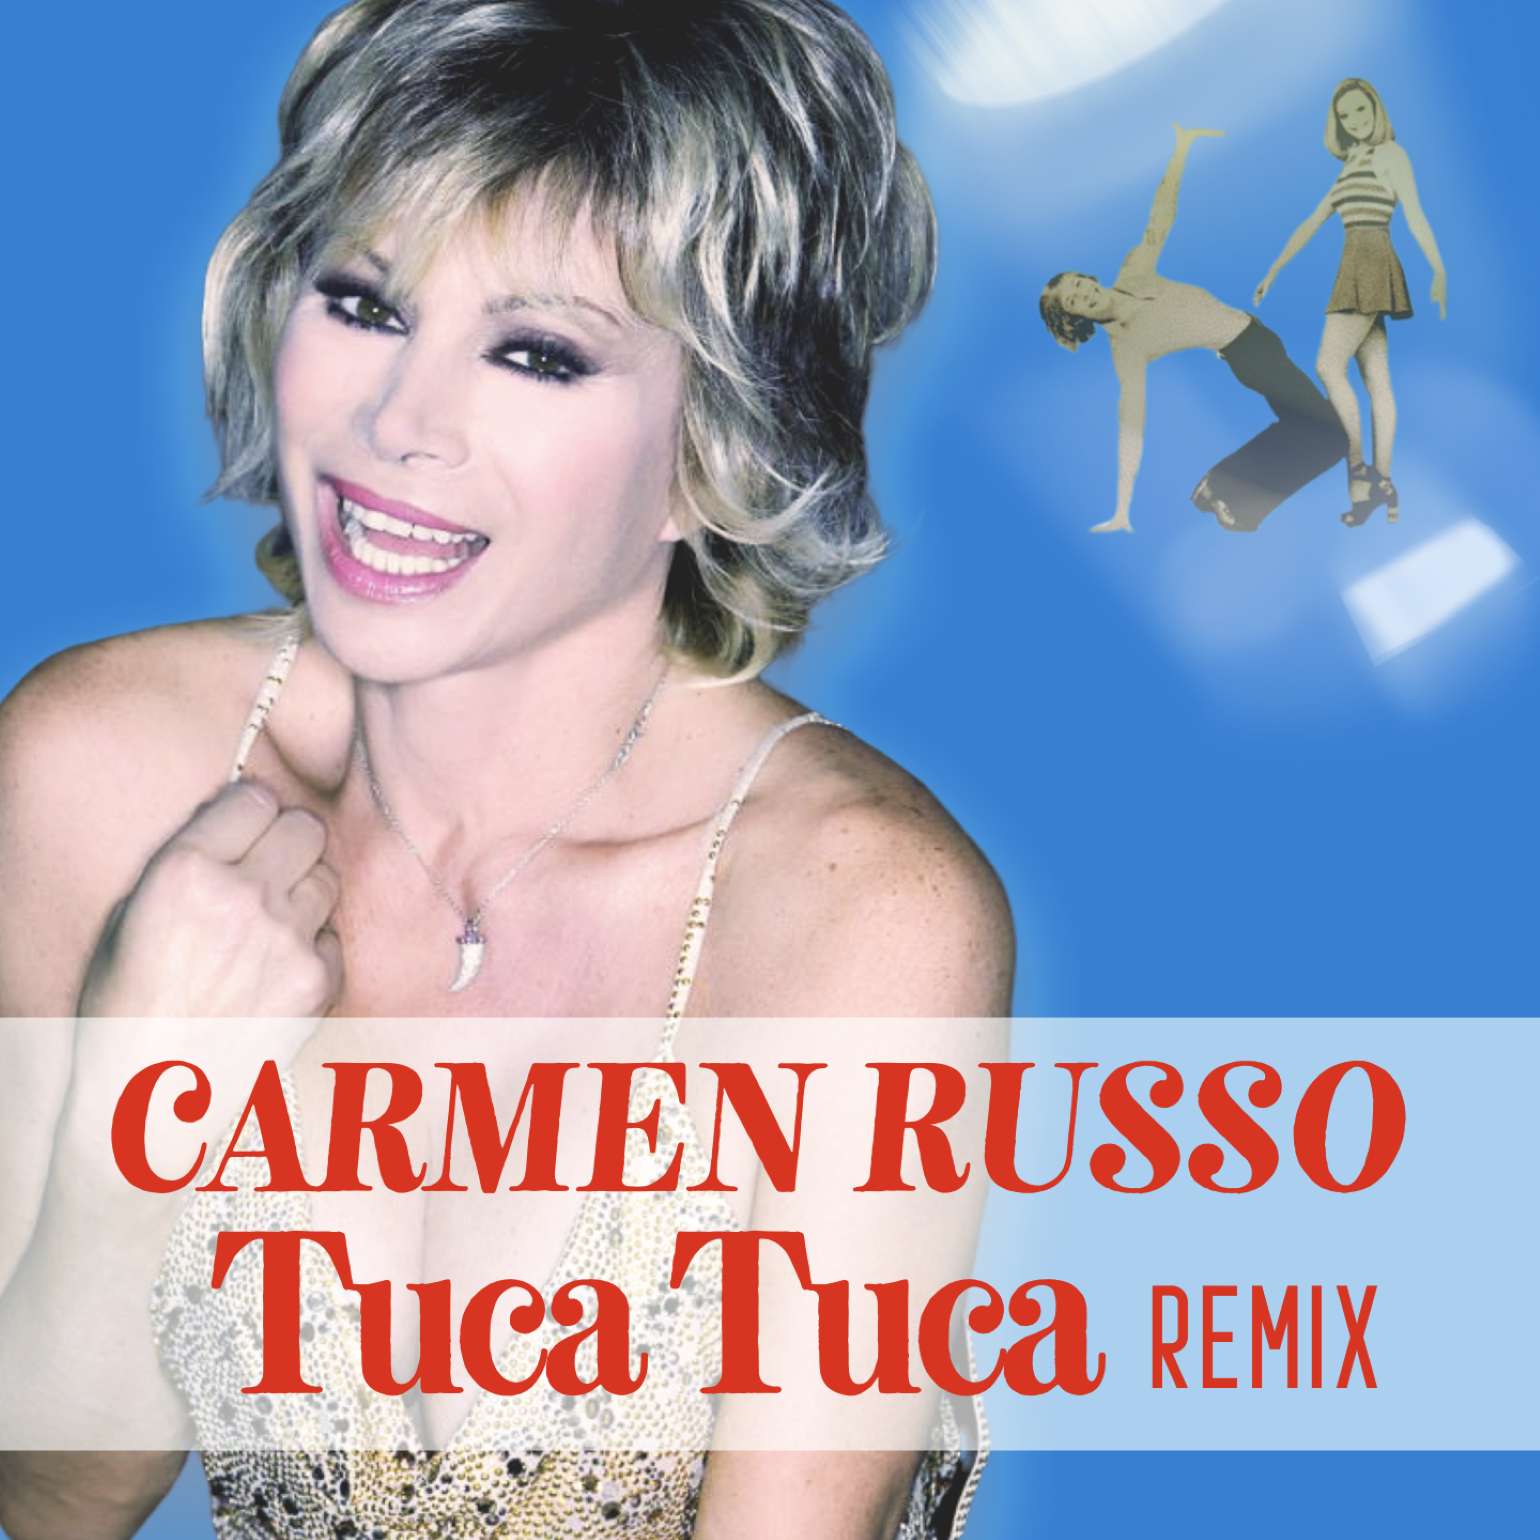 Carmen Russo e il “Tuca Tuca Remix” da venerdì 10 giugno nelle radio torinesi